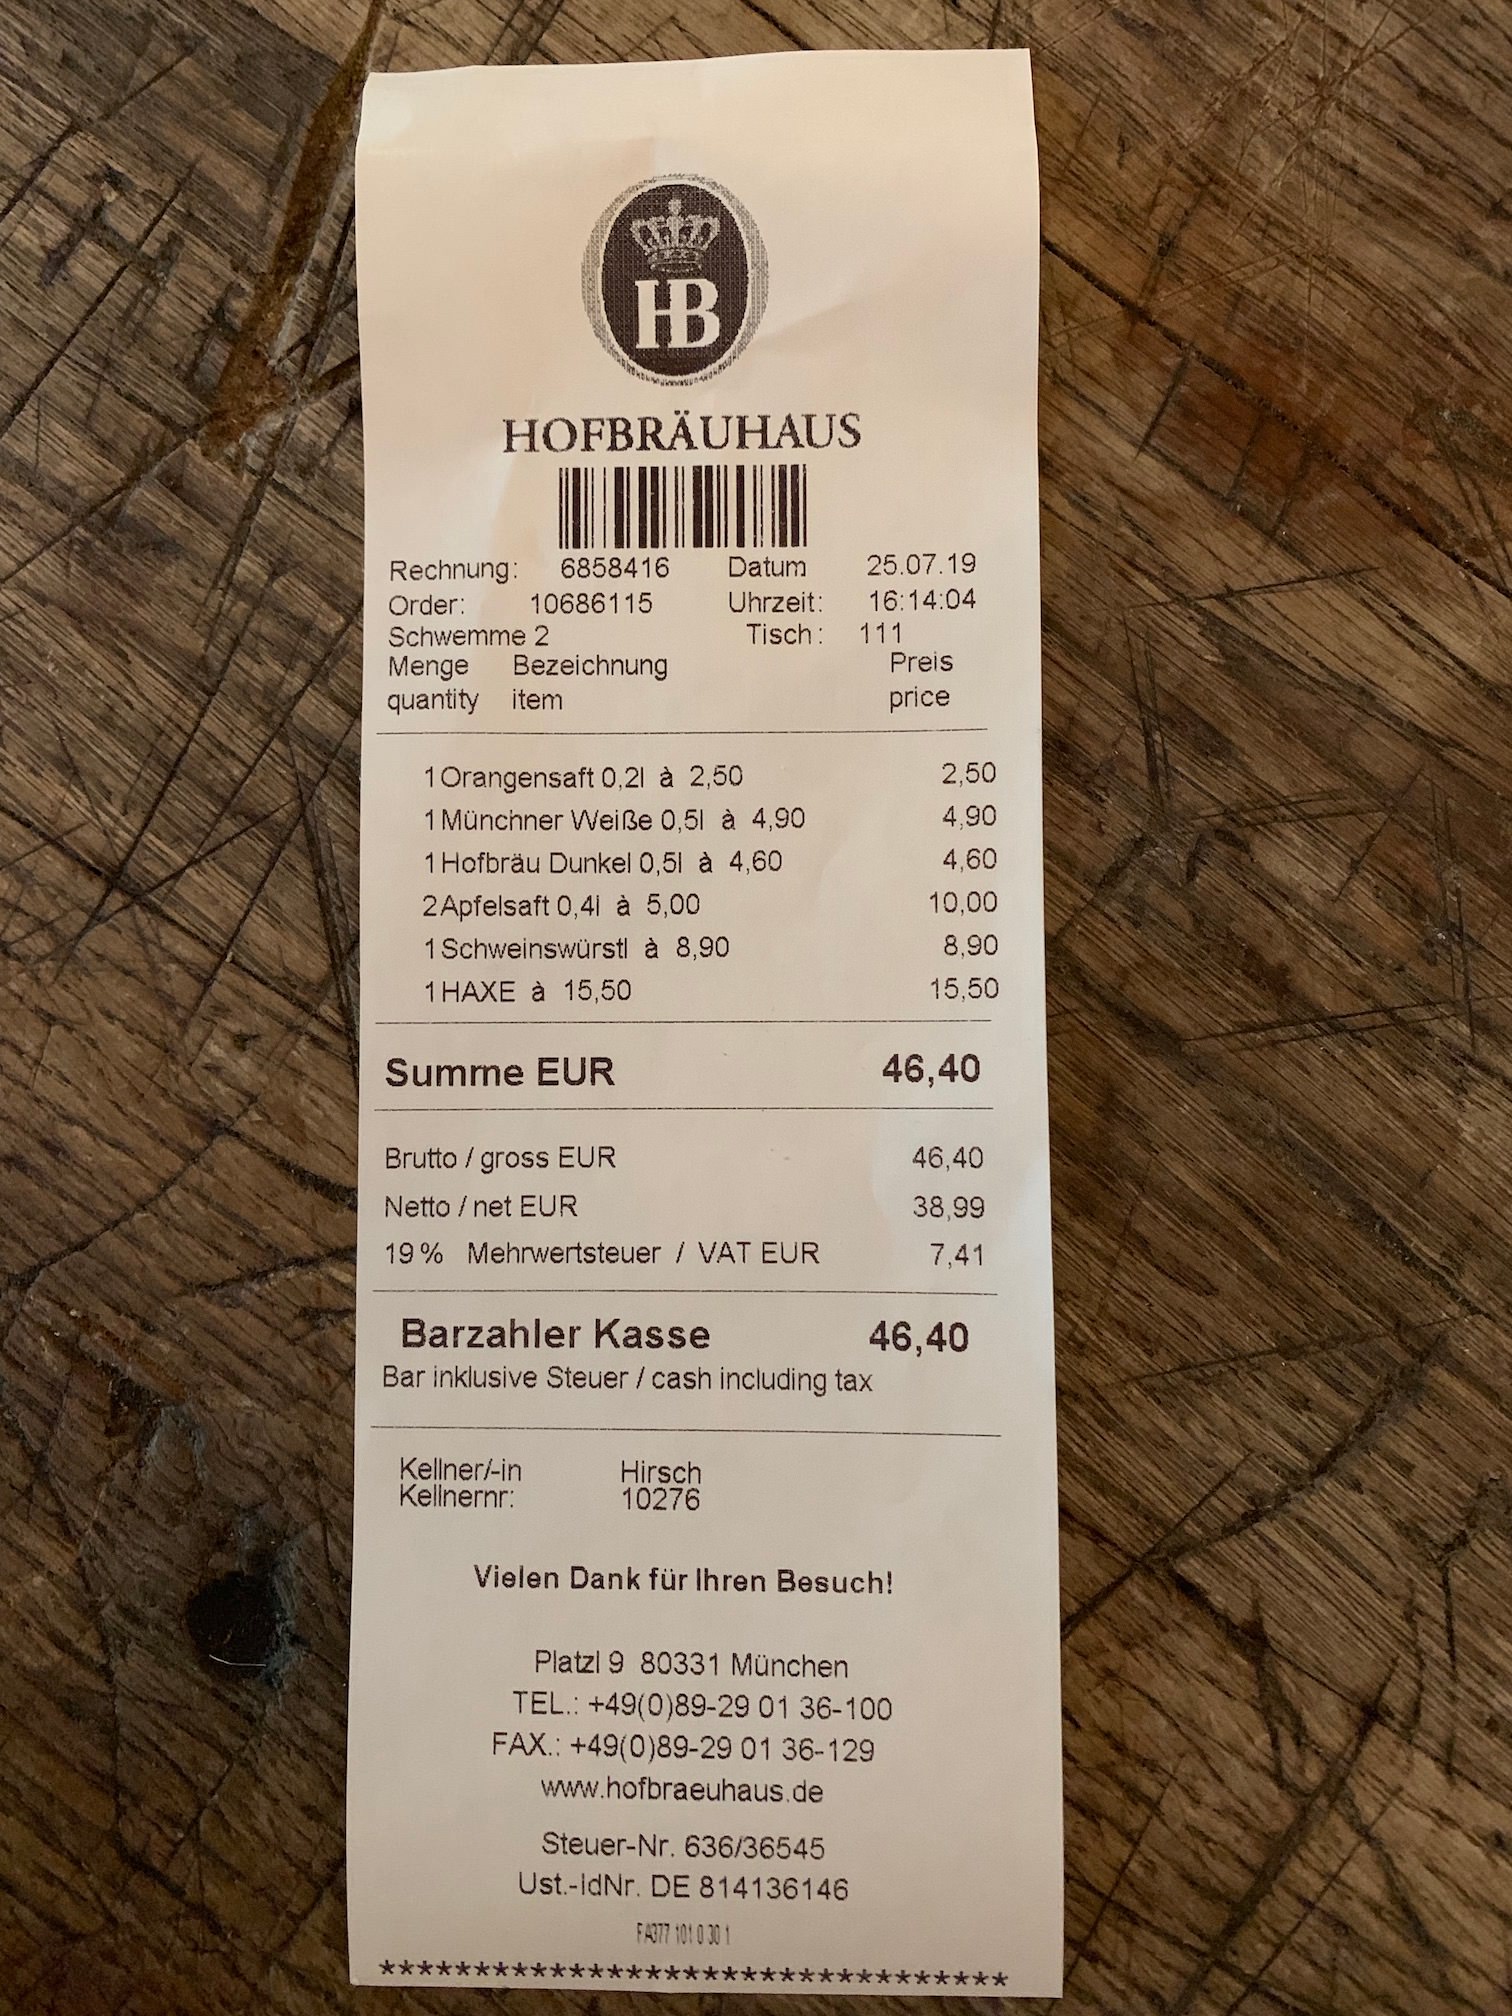 [慕尼黑美食]德國豬腳餐廳HB皇家啤酒屋Hofbräuhaus 空間明亮寬敞 適合多人聚餐喝酒聊天